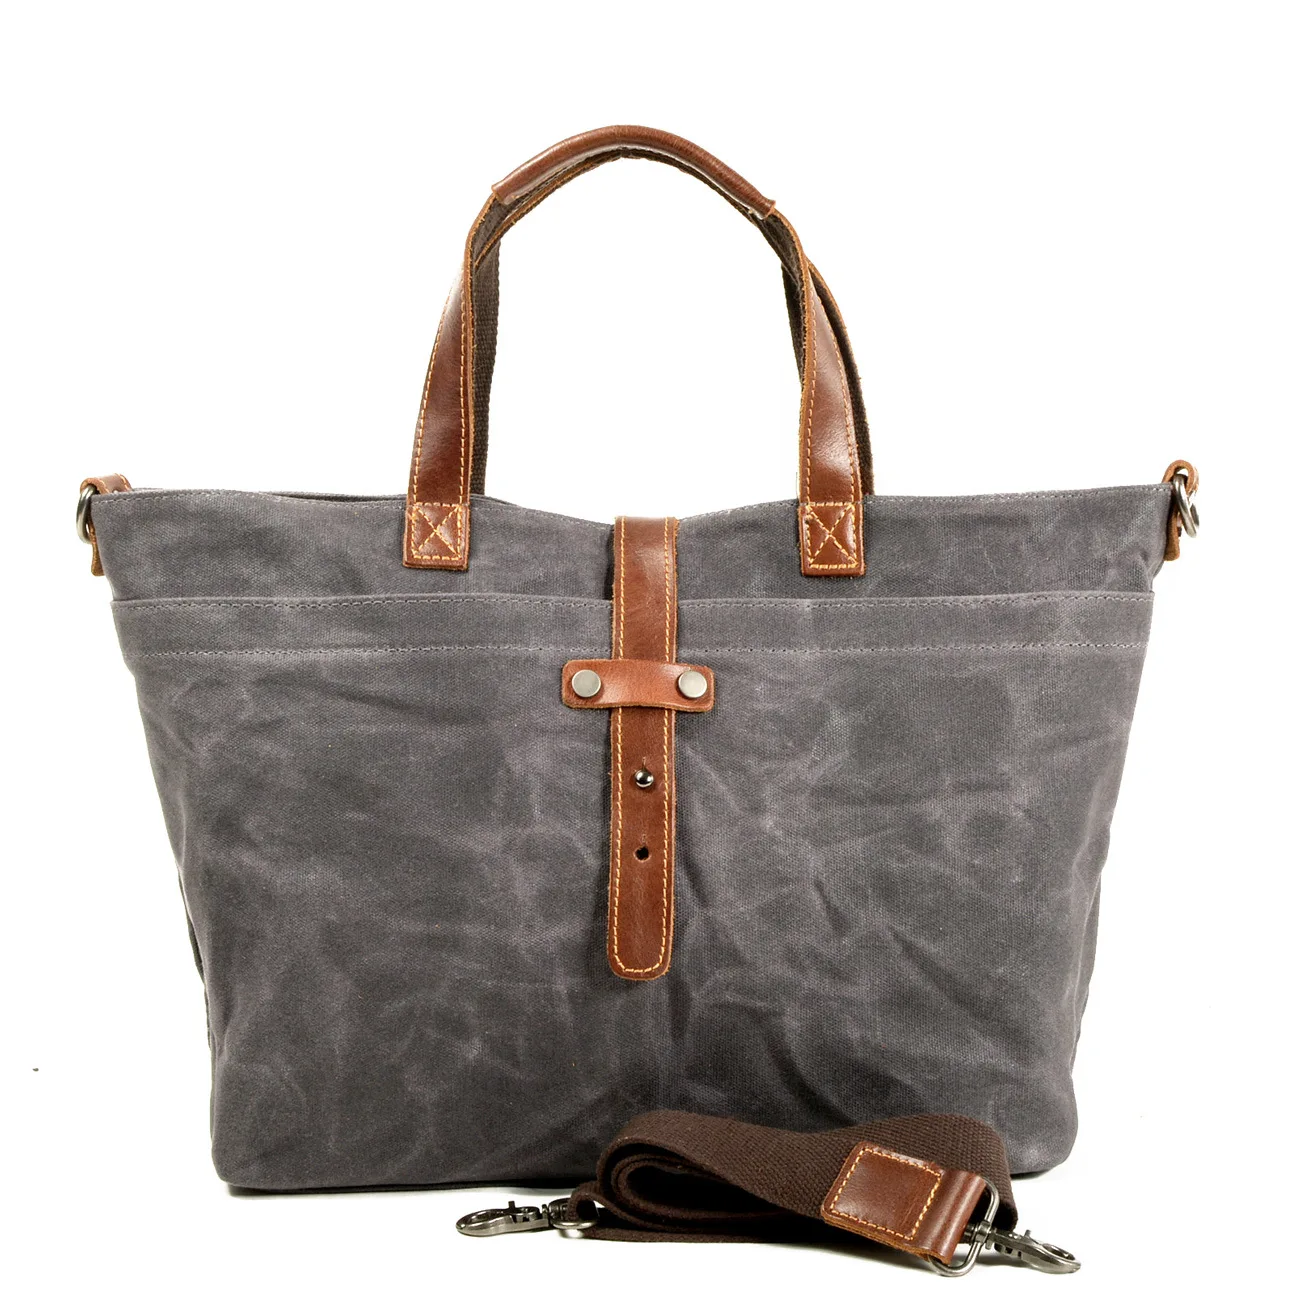 Восковая холщовая женская сумка простая сумка горизонтальная однотонная Ретро сумка через плечо мужская складывающаяся сумка-тоут сумка